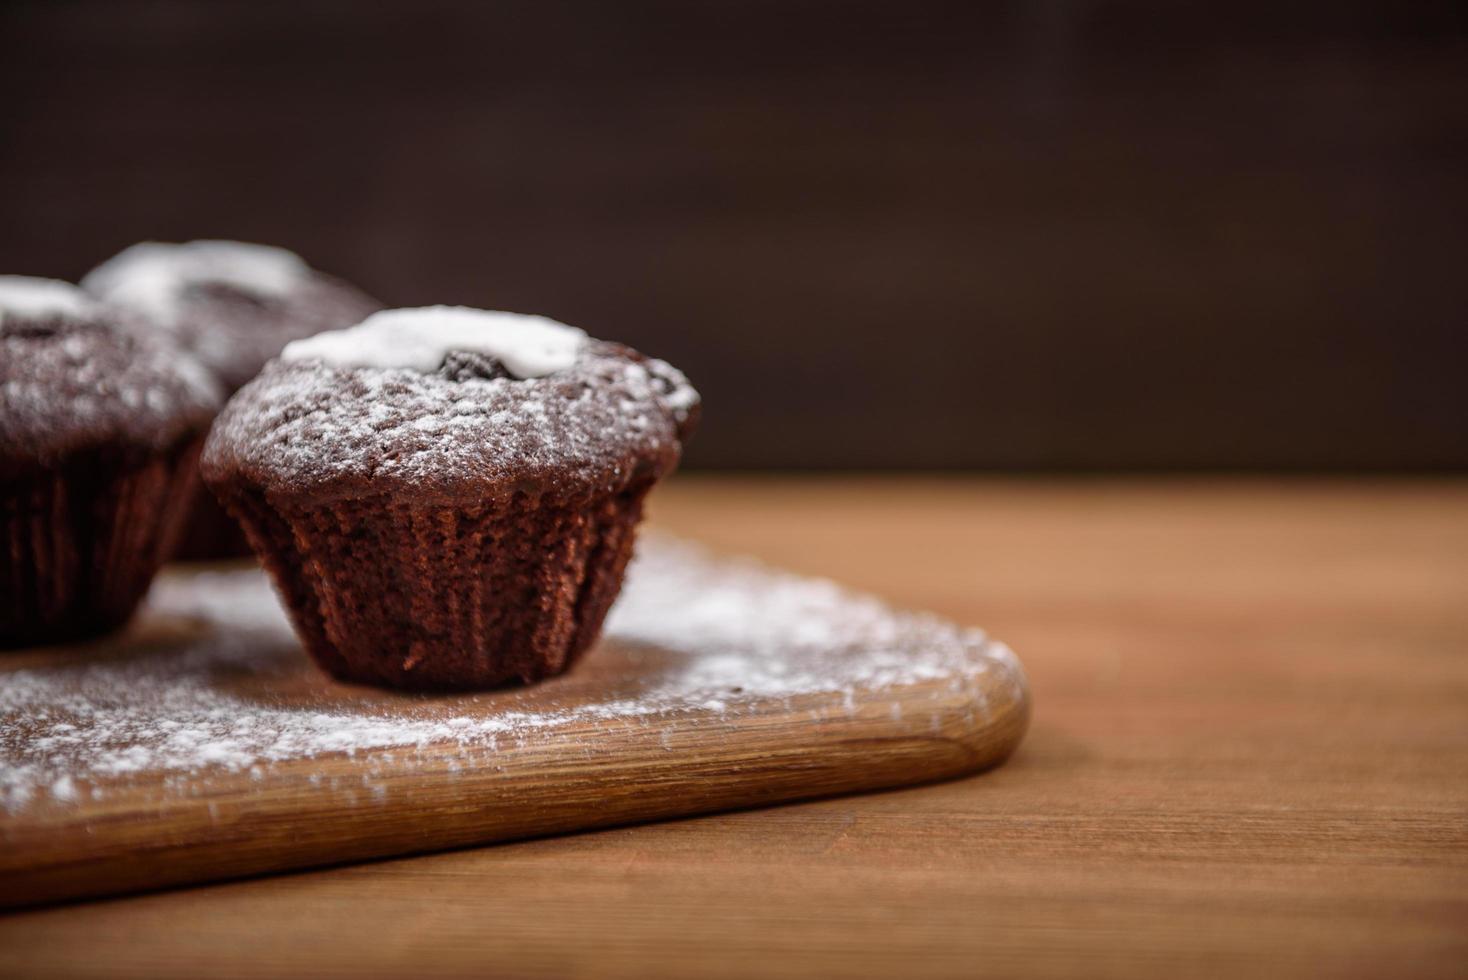 muffins au chocolat sur la planche de bois photo